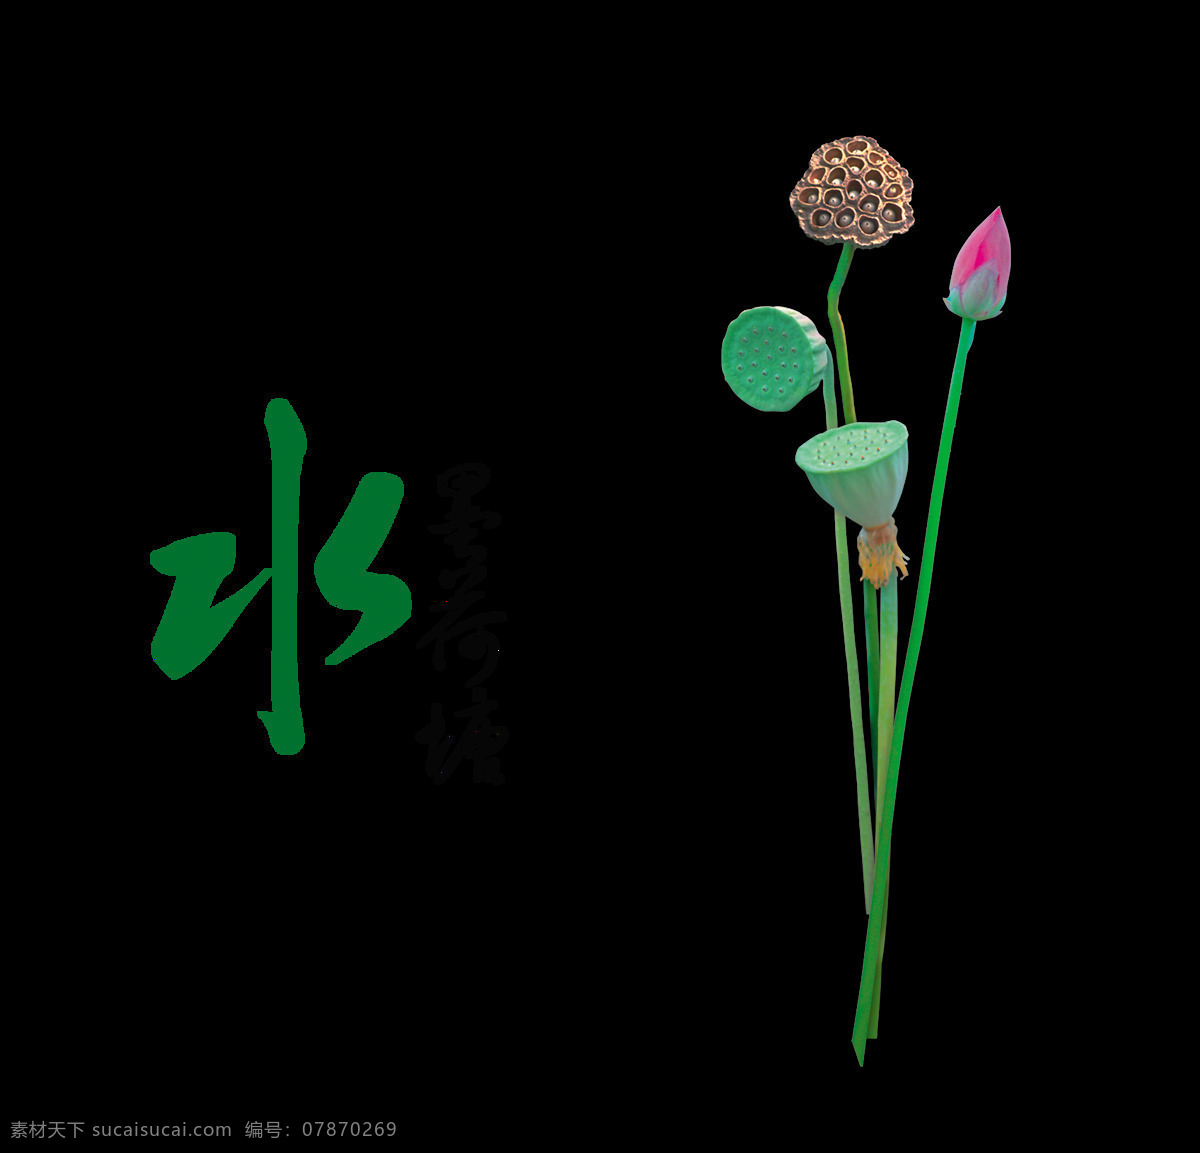 水墨 荷塘 艺术 字 中国 风 古典 广告 字体 水墨荷塘 中国风 古风 艺术字 海报